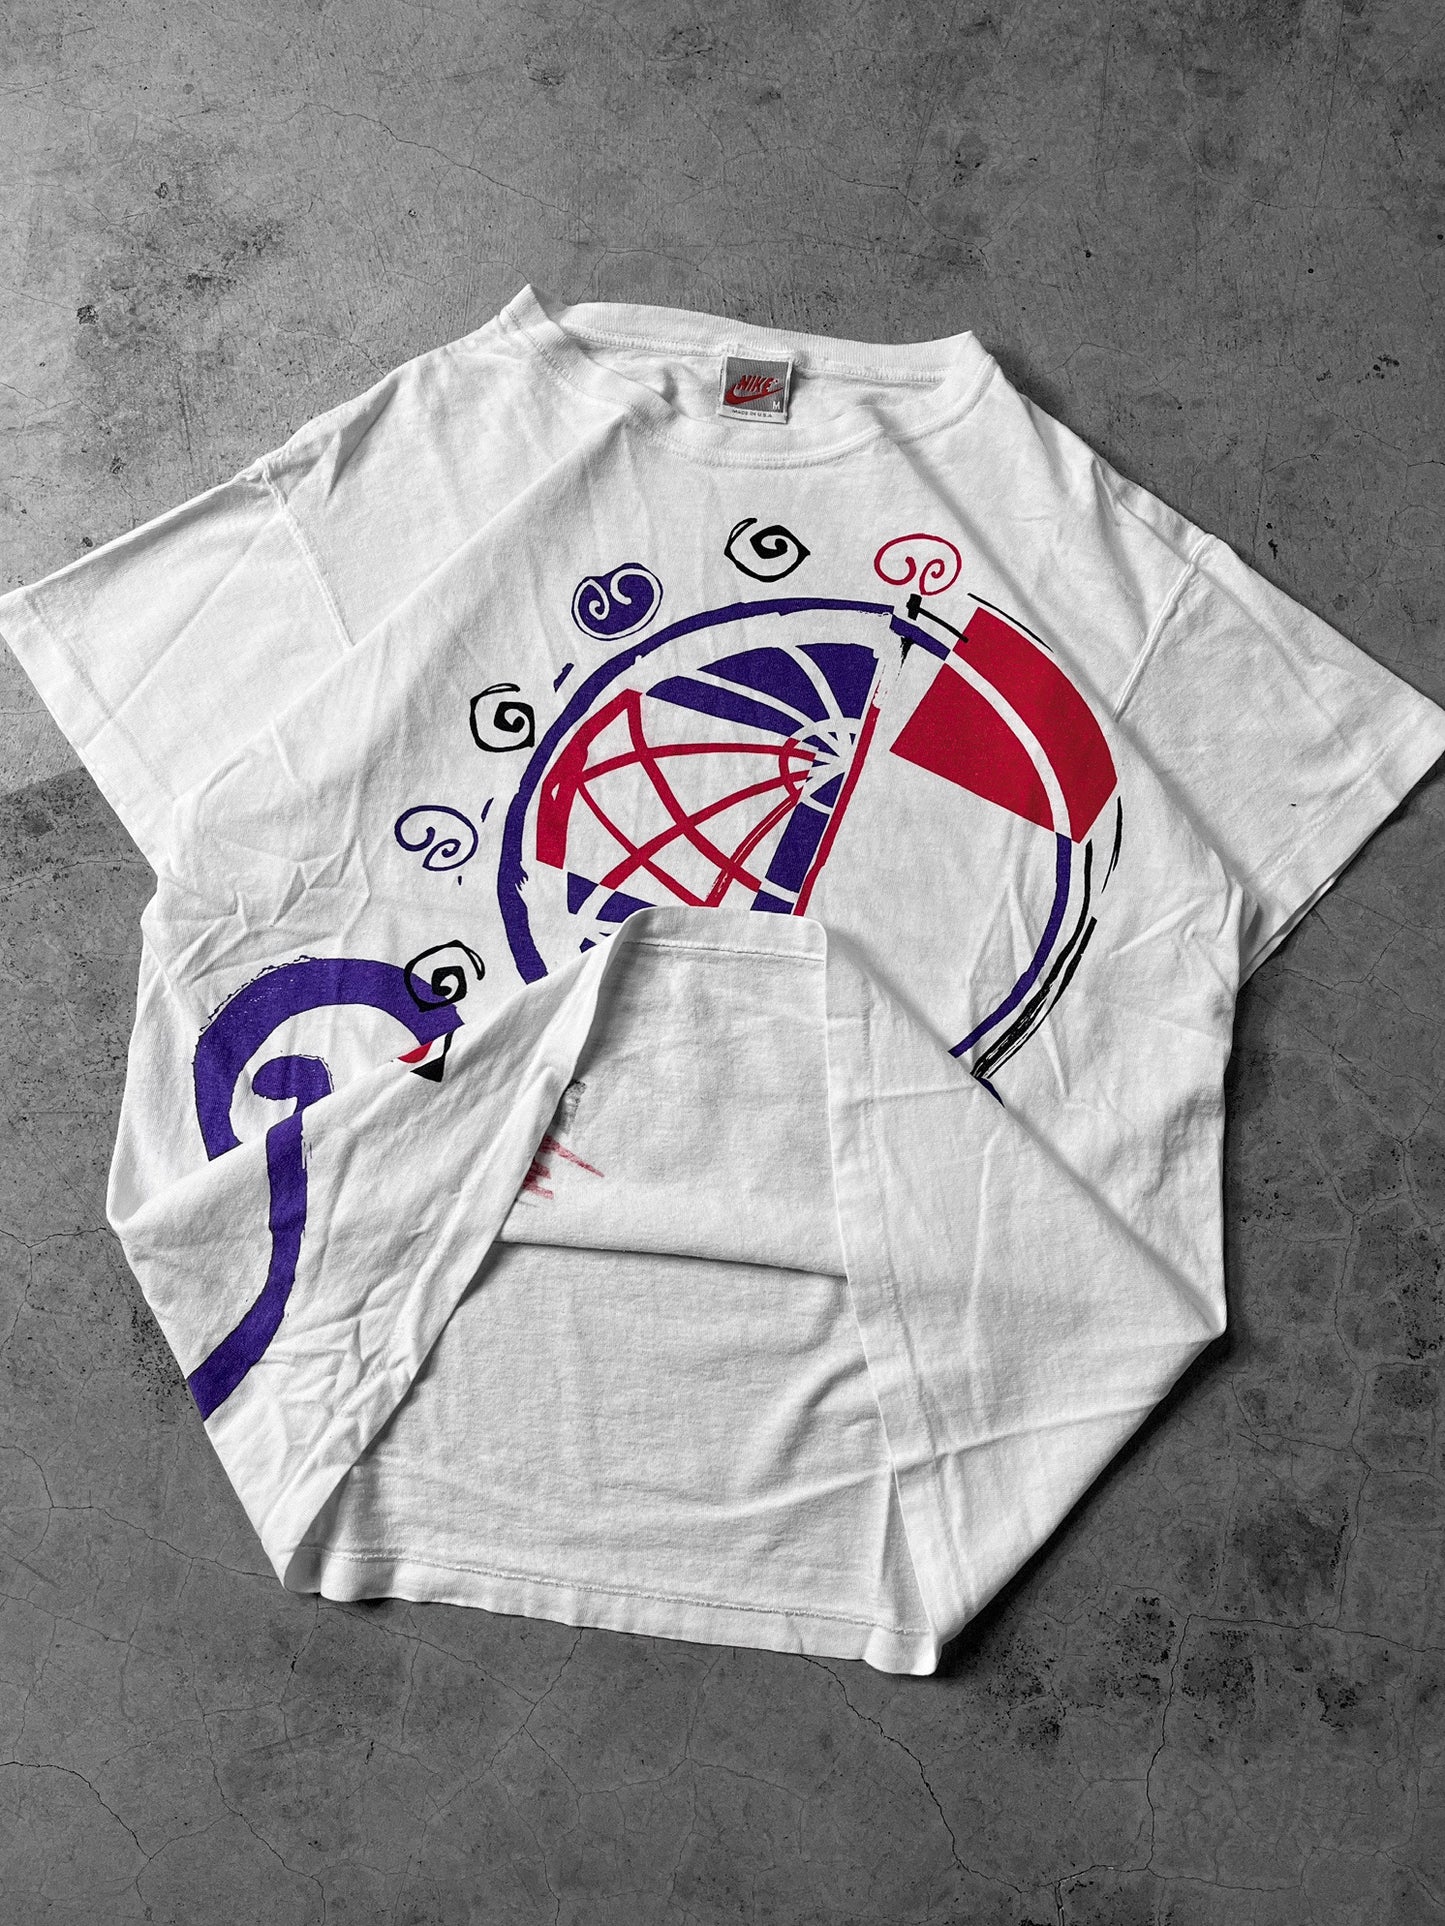 90’s Nike ‘Swirl’ Shirt - M